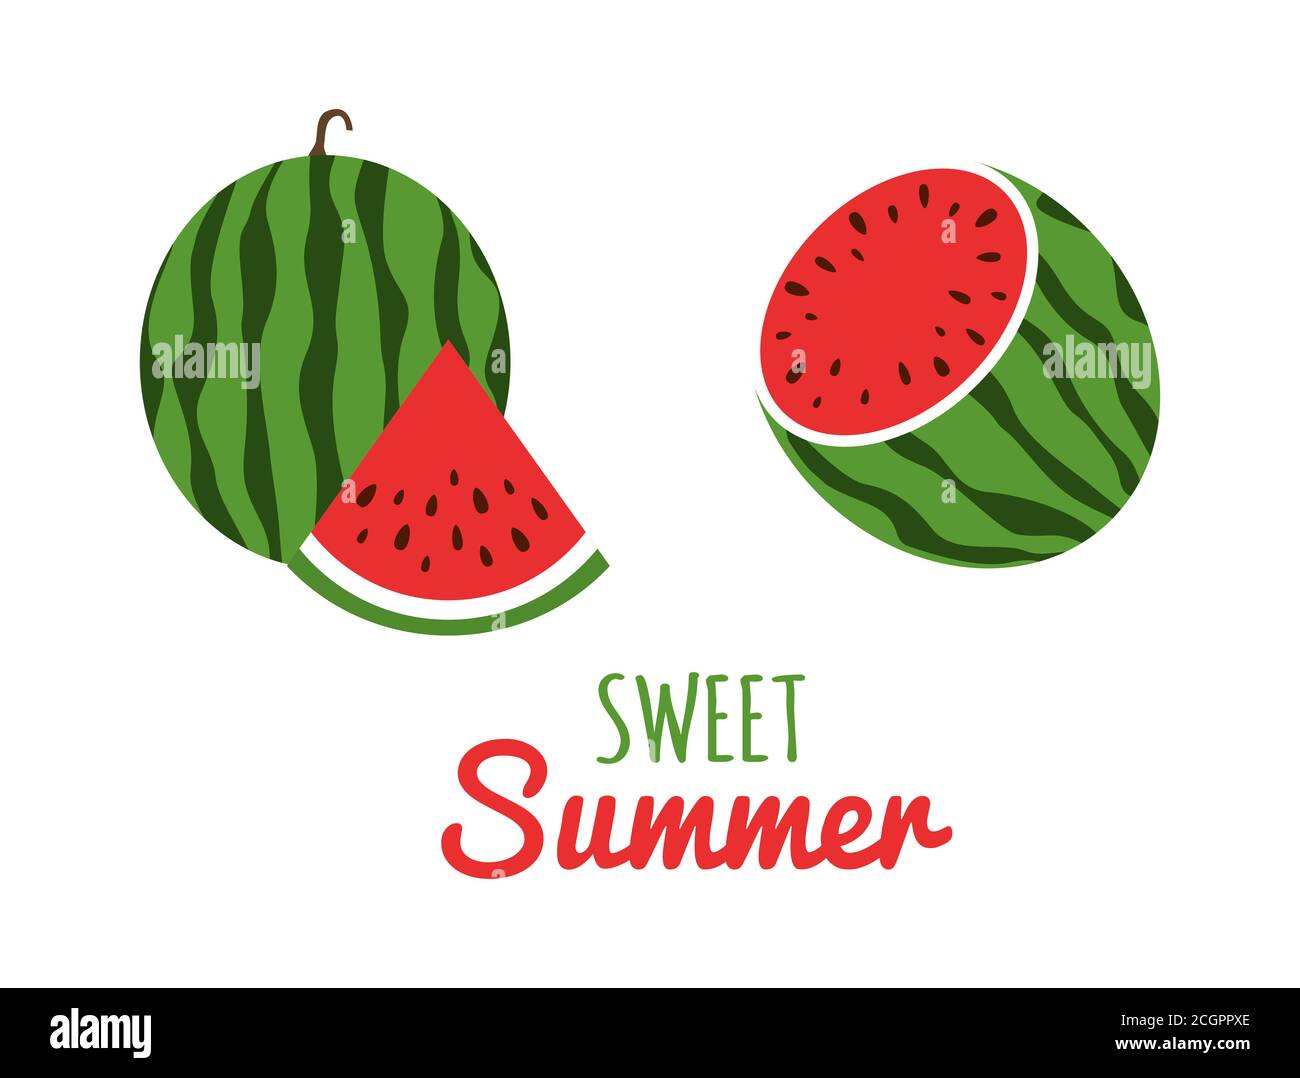 Wassermelone-Ikone im flachen Stil. Saft Wassermelone Set. Rote Scheiben Wassermelonen. Süßer tropischer Sommer Hintergrund. Vektorgrafik Stock Vektor